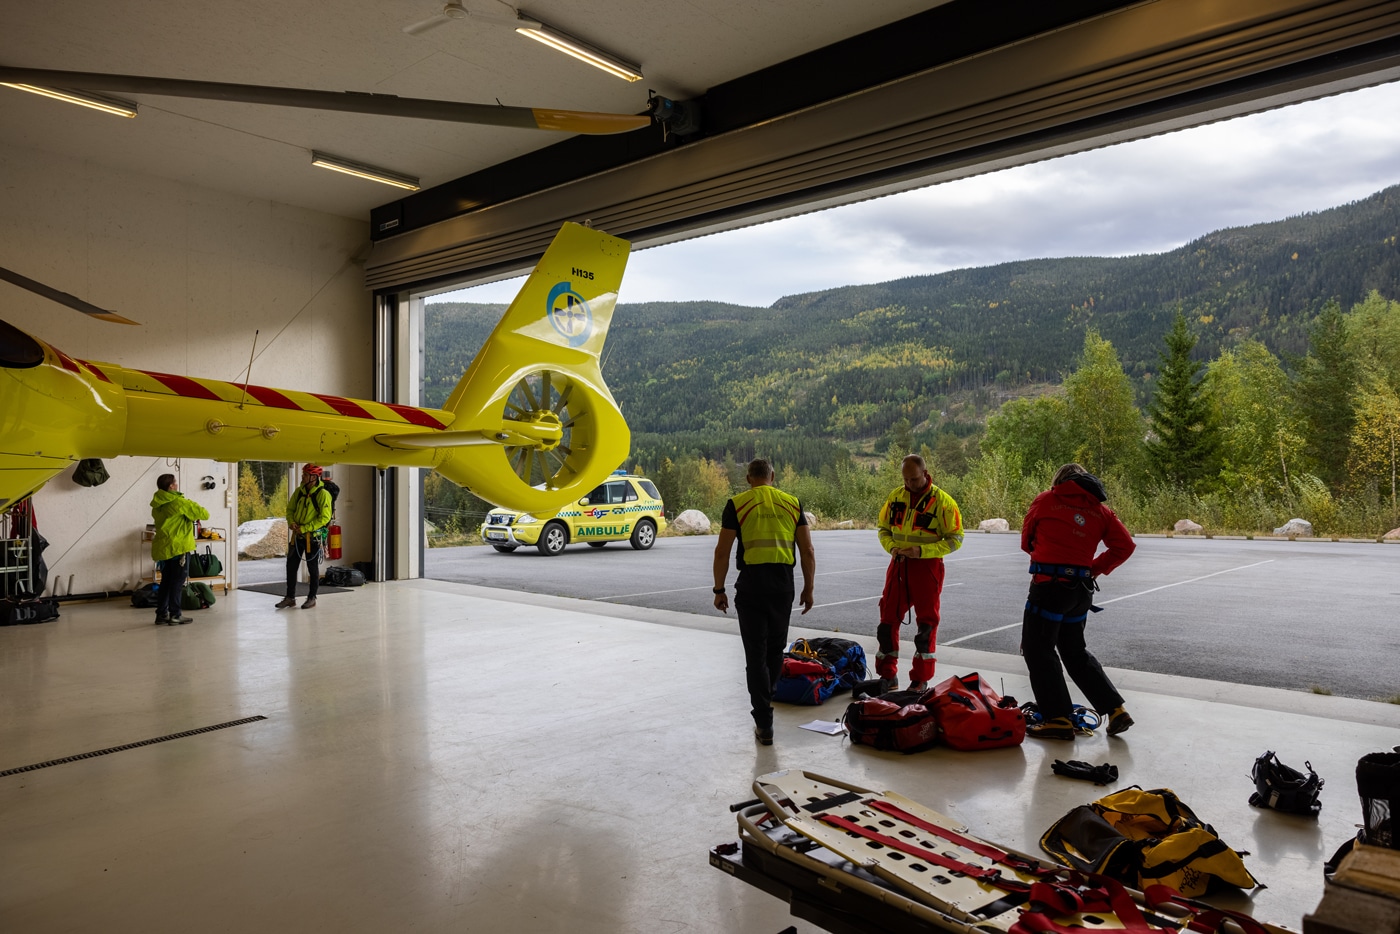 Assisterende redningsteknisk sjef i Norsk Luftambulanse, Espen Witzøe, fremhever betydningen av luftambulansens samarbeid med annet redningspersonell.